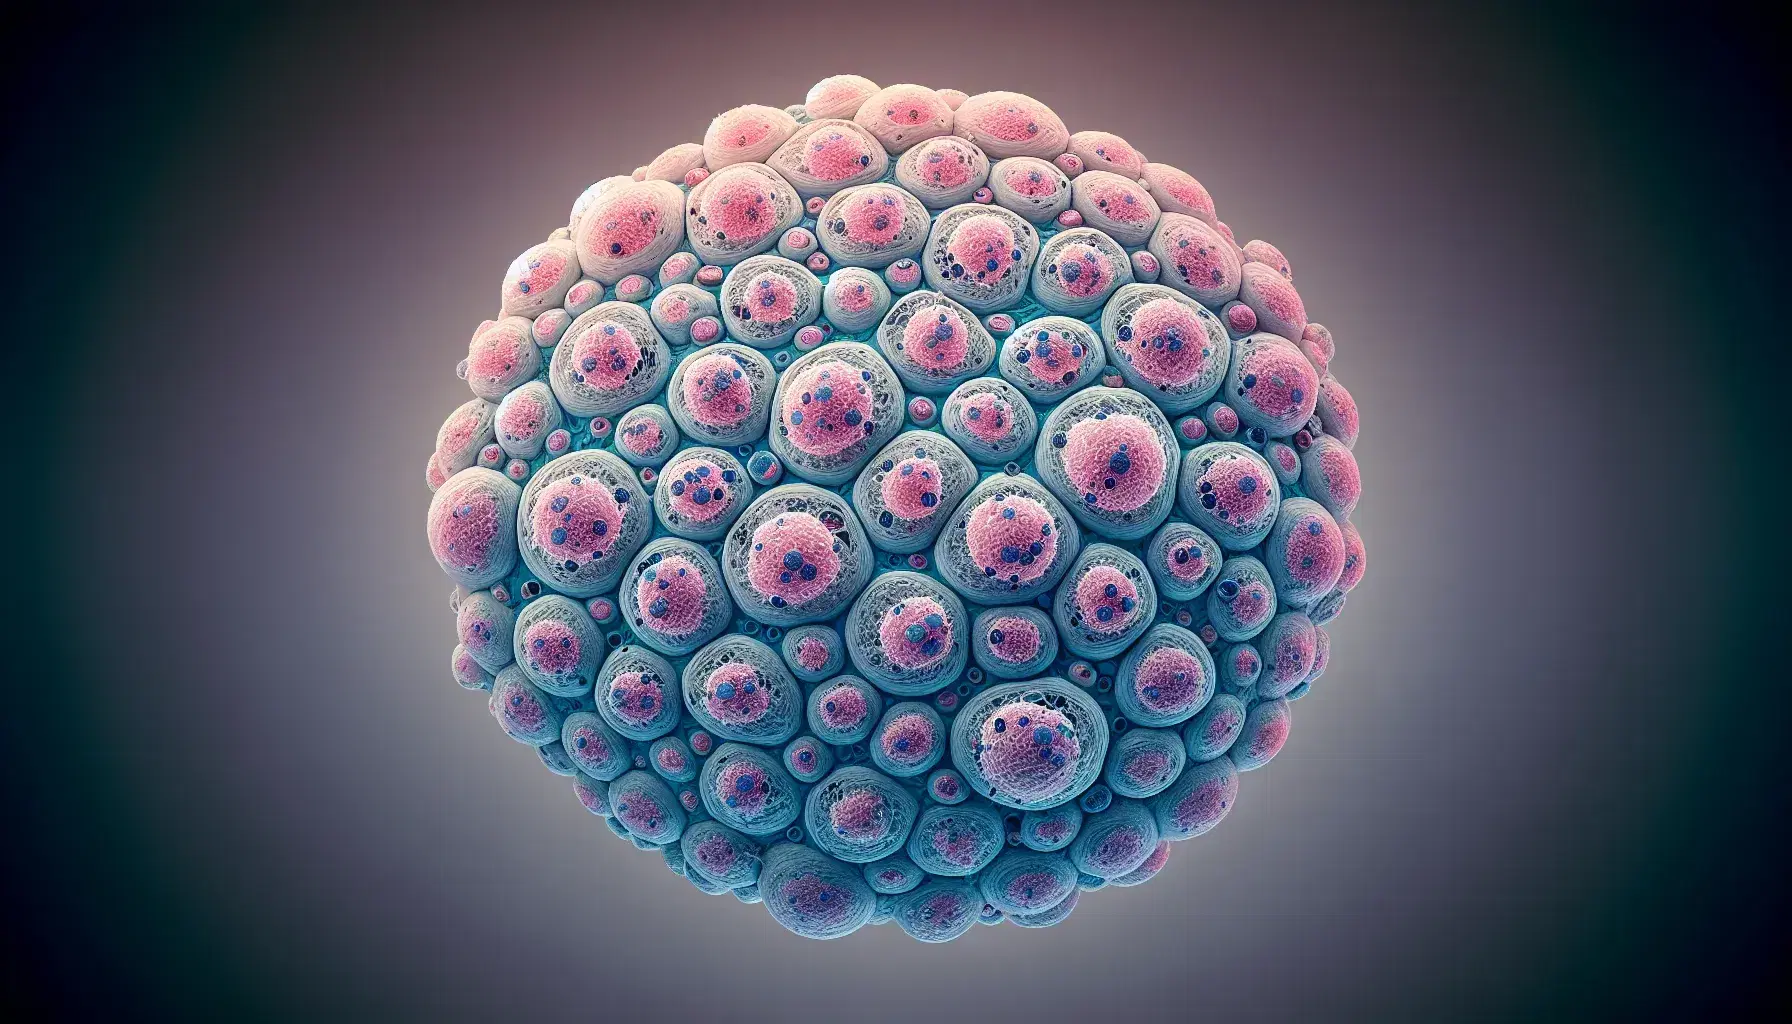 Vista microscópica de tejido celular con núcleos oscuros y citoplasma claro, células bien definidas en tonos rosas, púrpuras y azules.